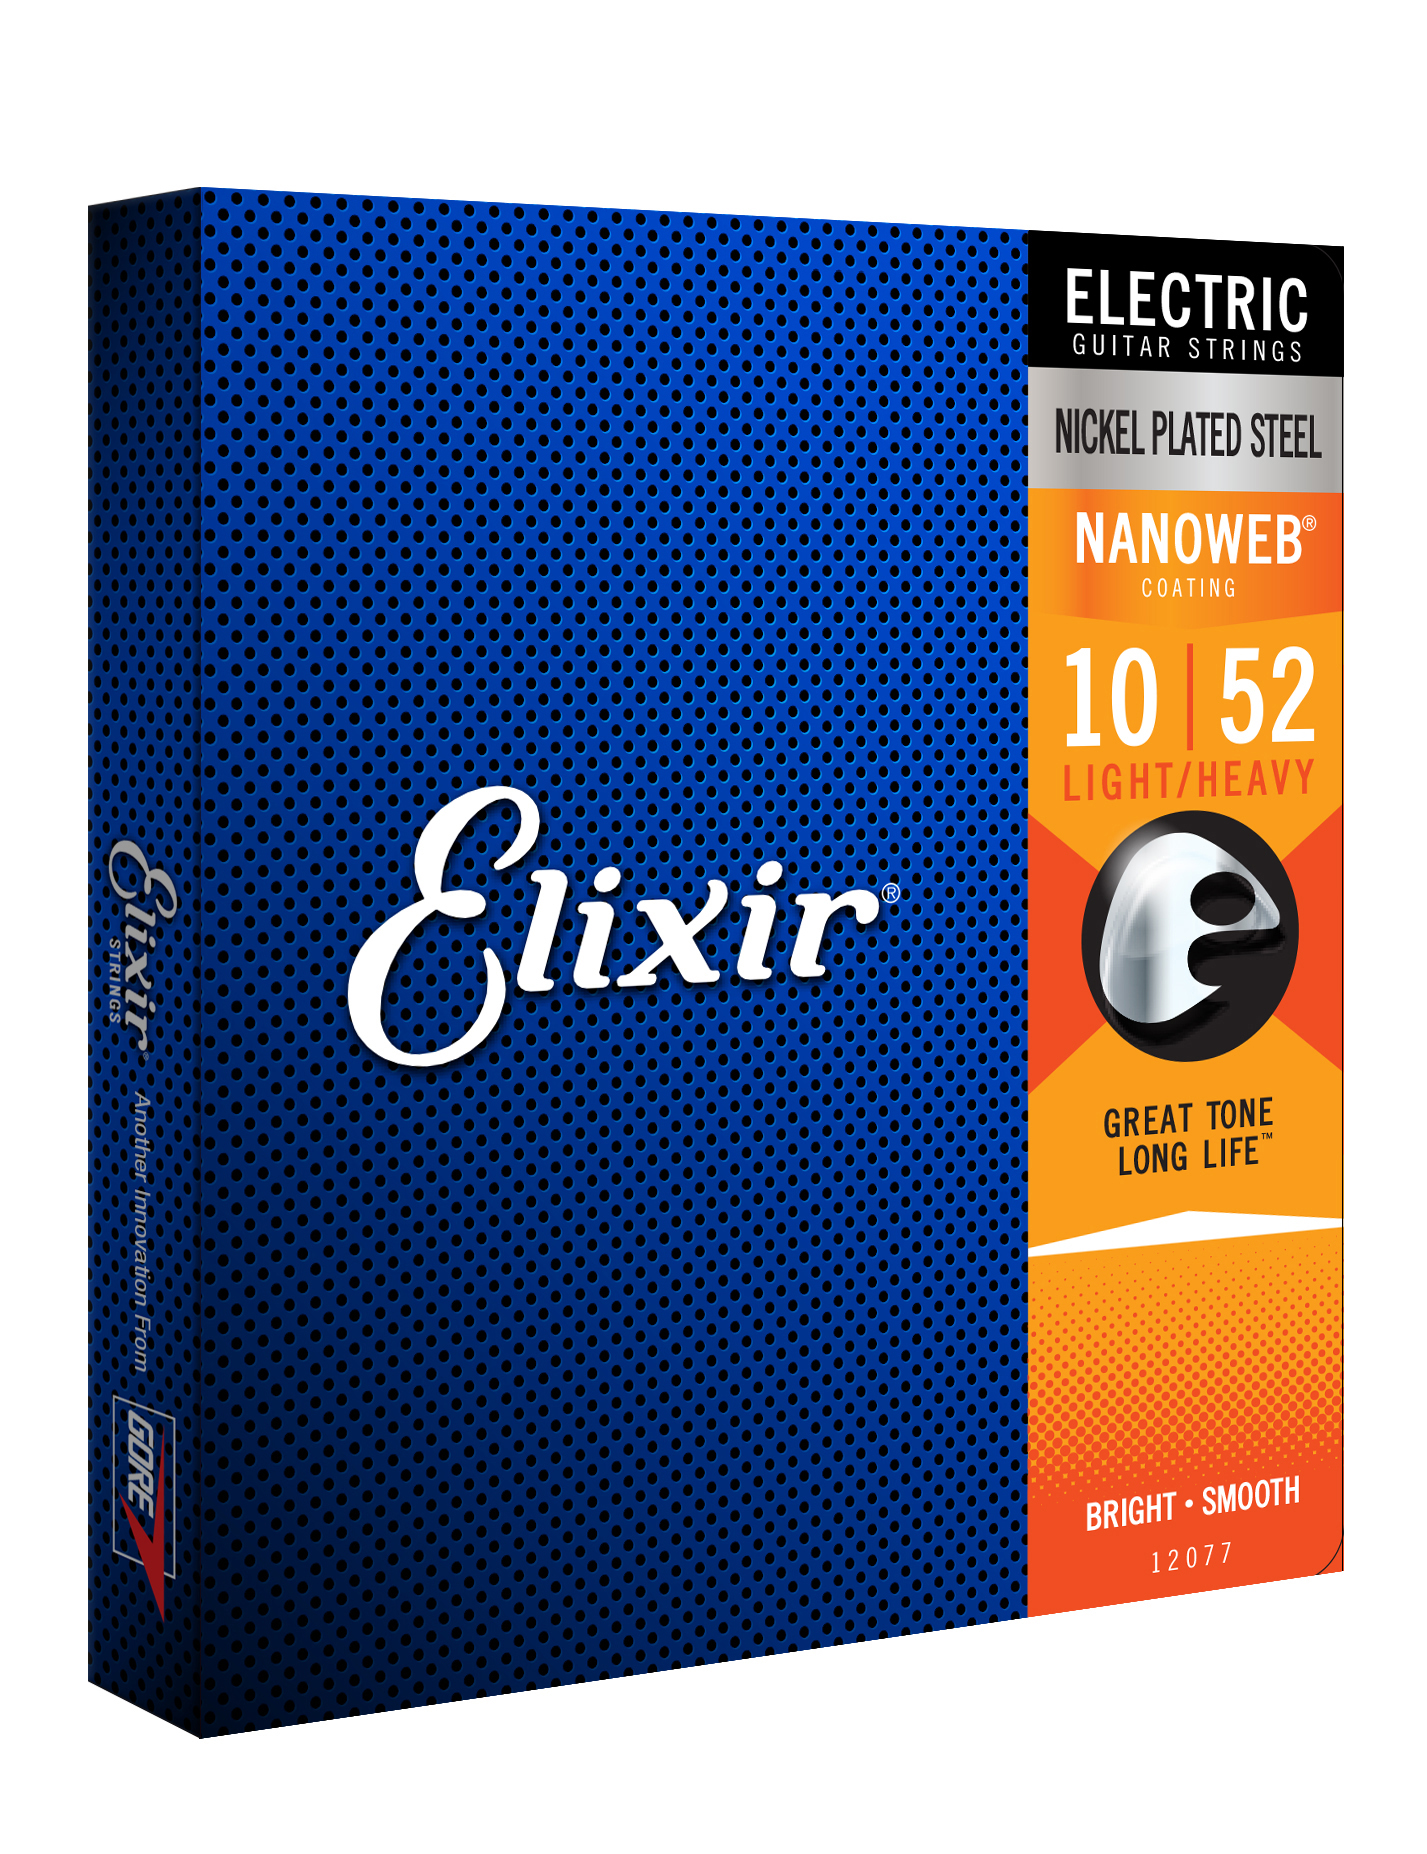 Elixir Jeu De 6 Cordes Electric (6) 12077 Nanoweb Nickel Plated Steel Light Heavy 10-52 - Elektrische gitaarsnaren - Variation 1